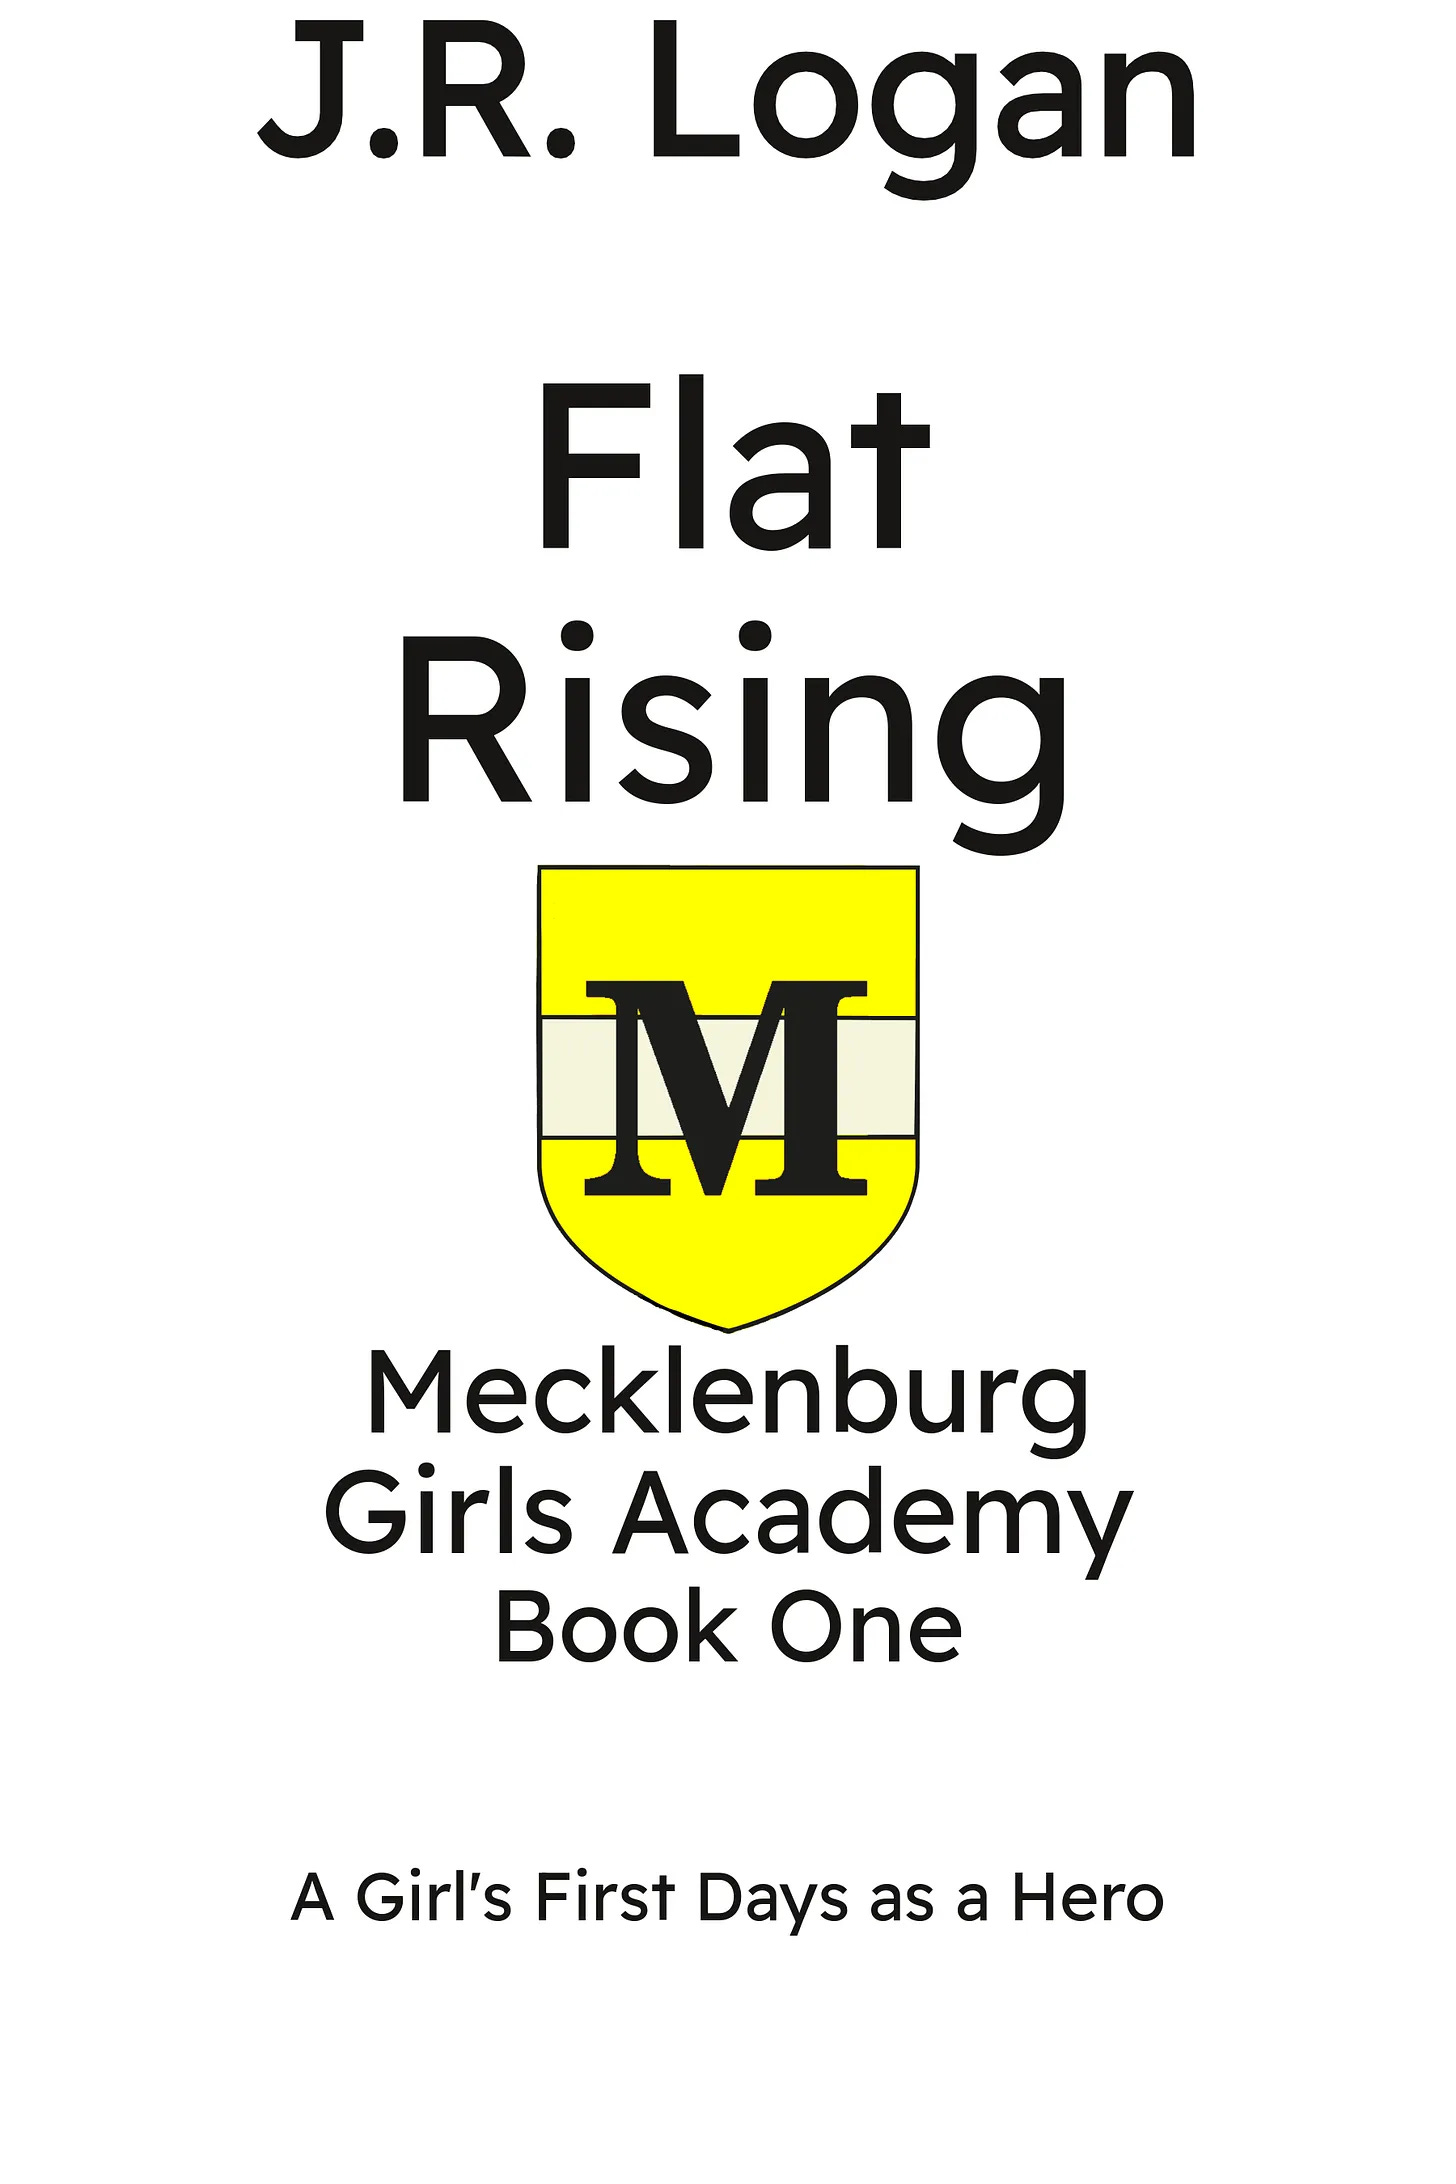 Mecklenburg Girls Academy. By J.R. Logan